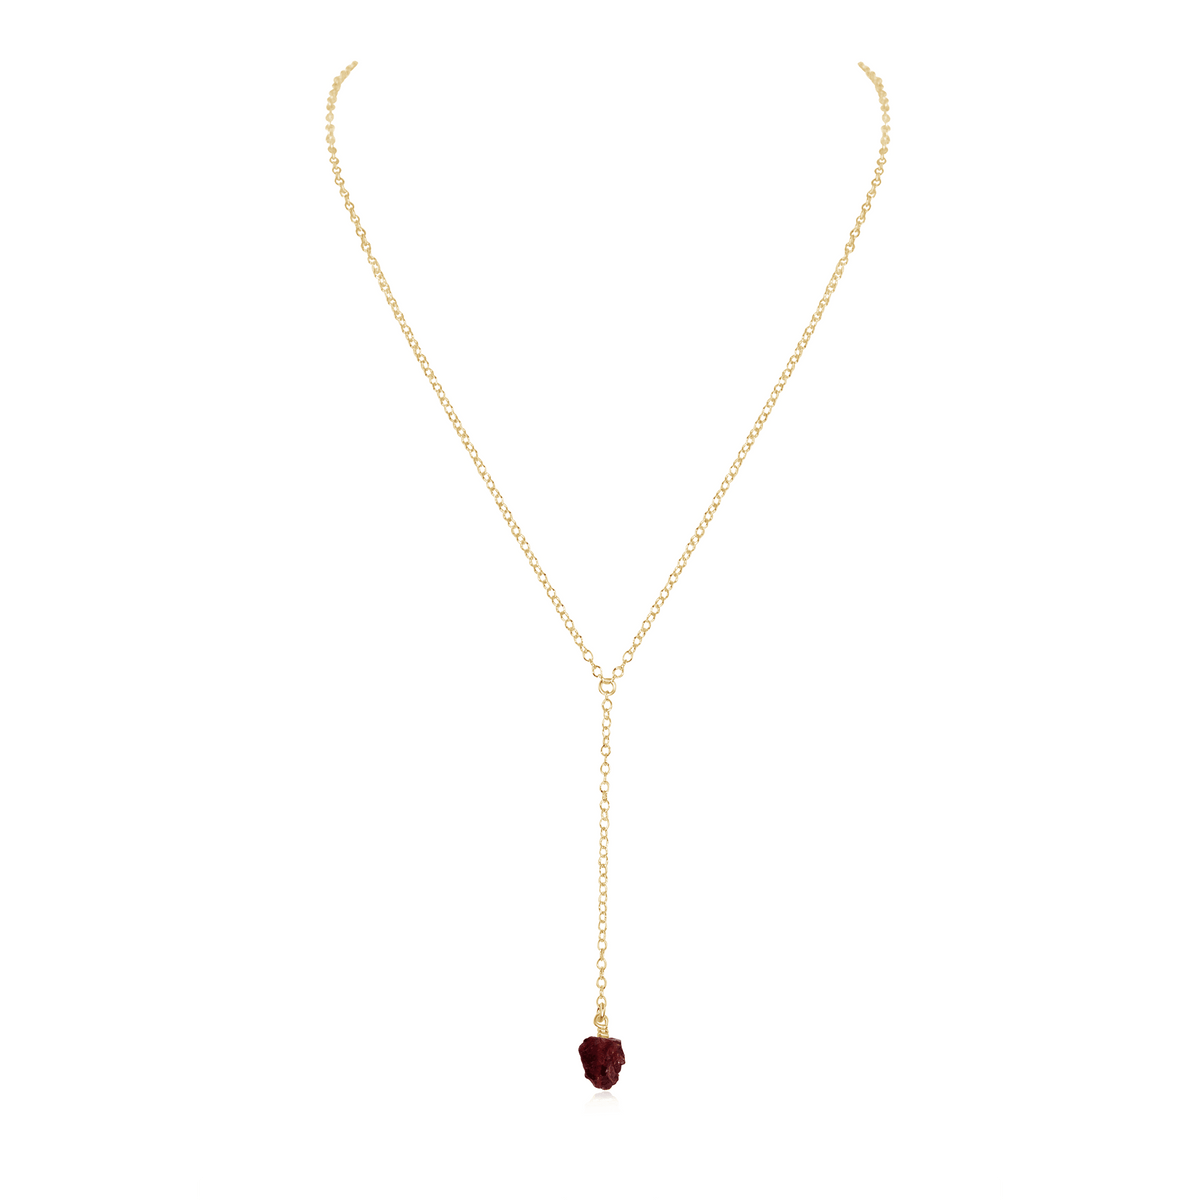 Raw Garnet Crystal Lariat Necklace - Raw Garnet Crystal Lariat Necklace - 14k Gold Fill - Luna Tide Handmade Crystal Jewellery